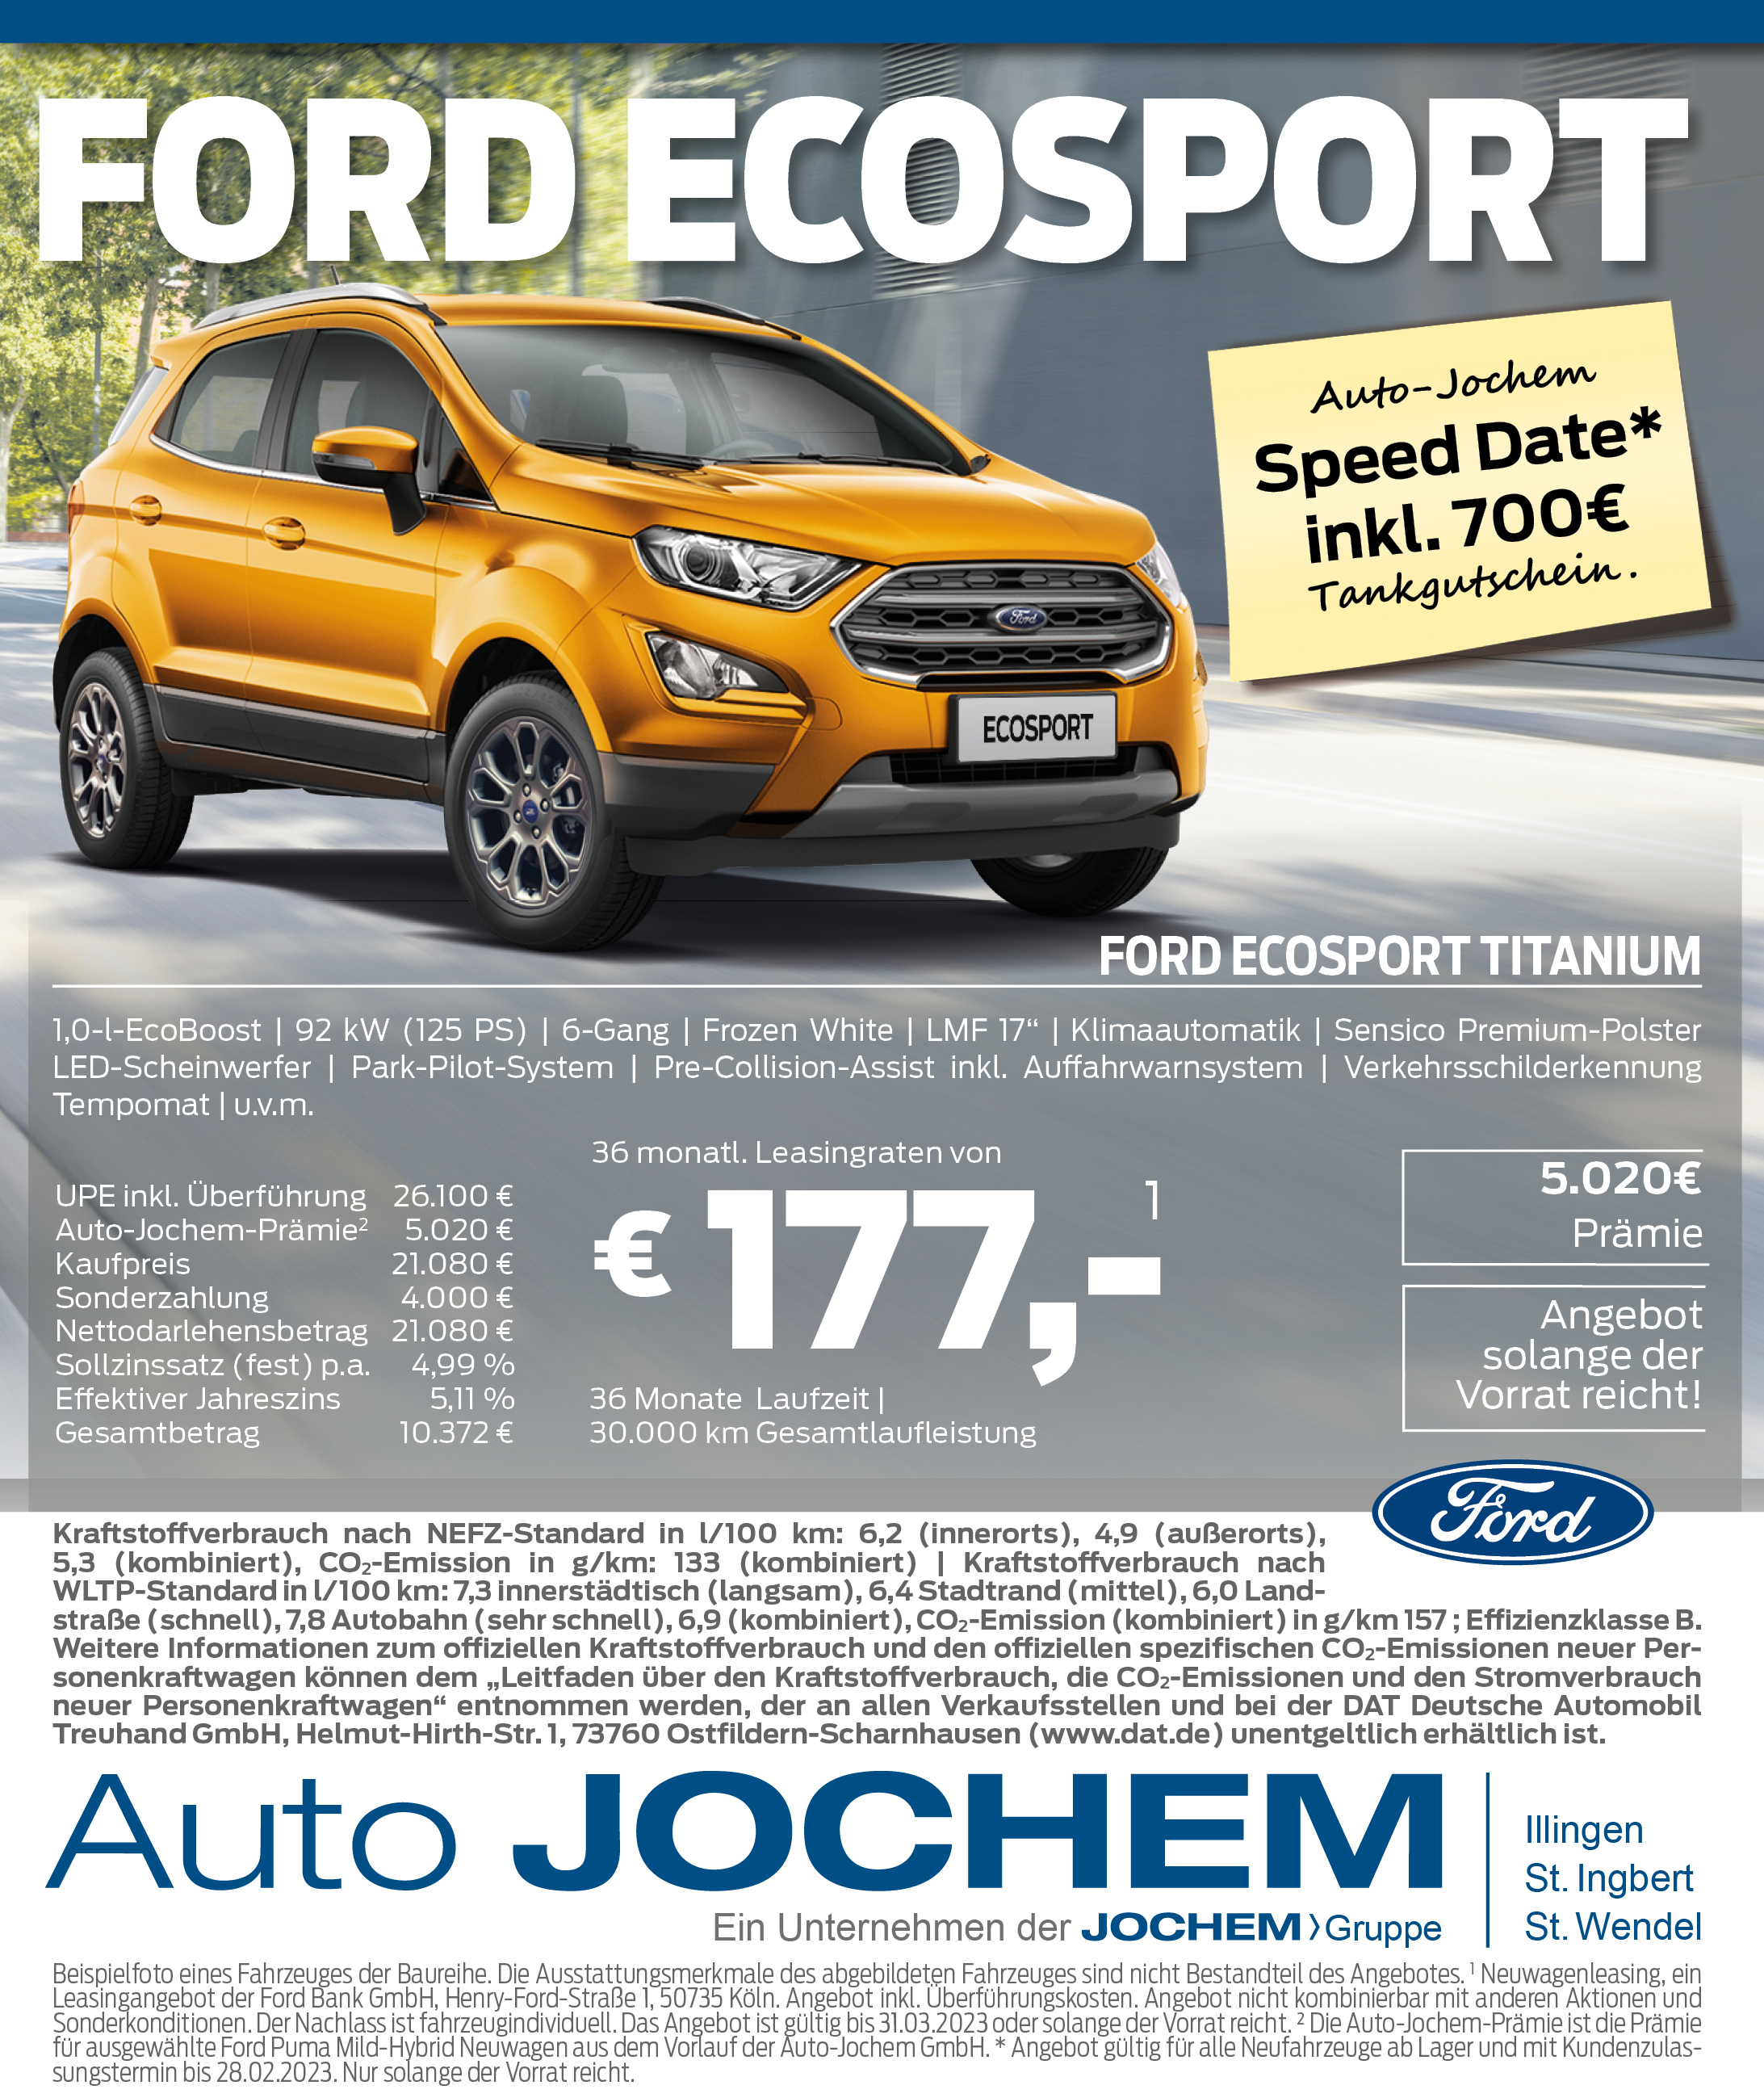 Angebot Ford Ecosport | Auto-Jochem GmbH in Illingen, St. Ingbert und St. Wendel